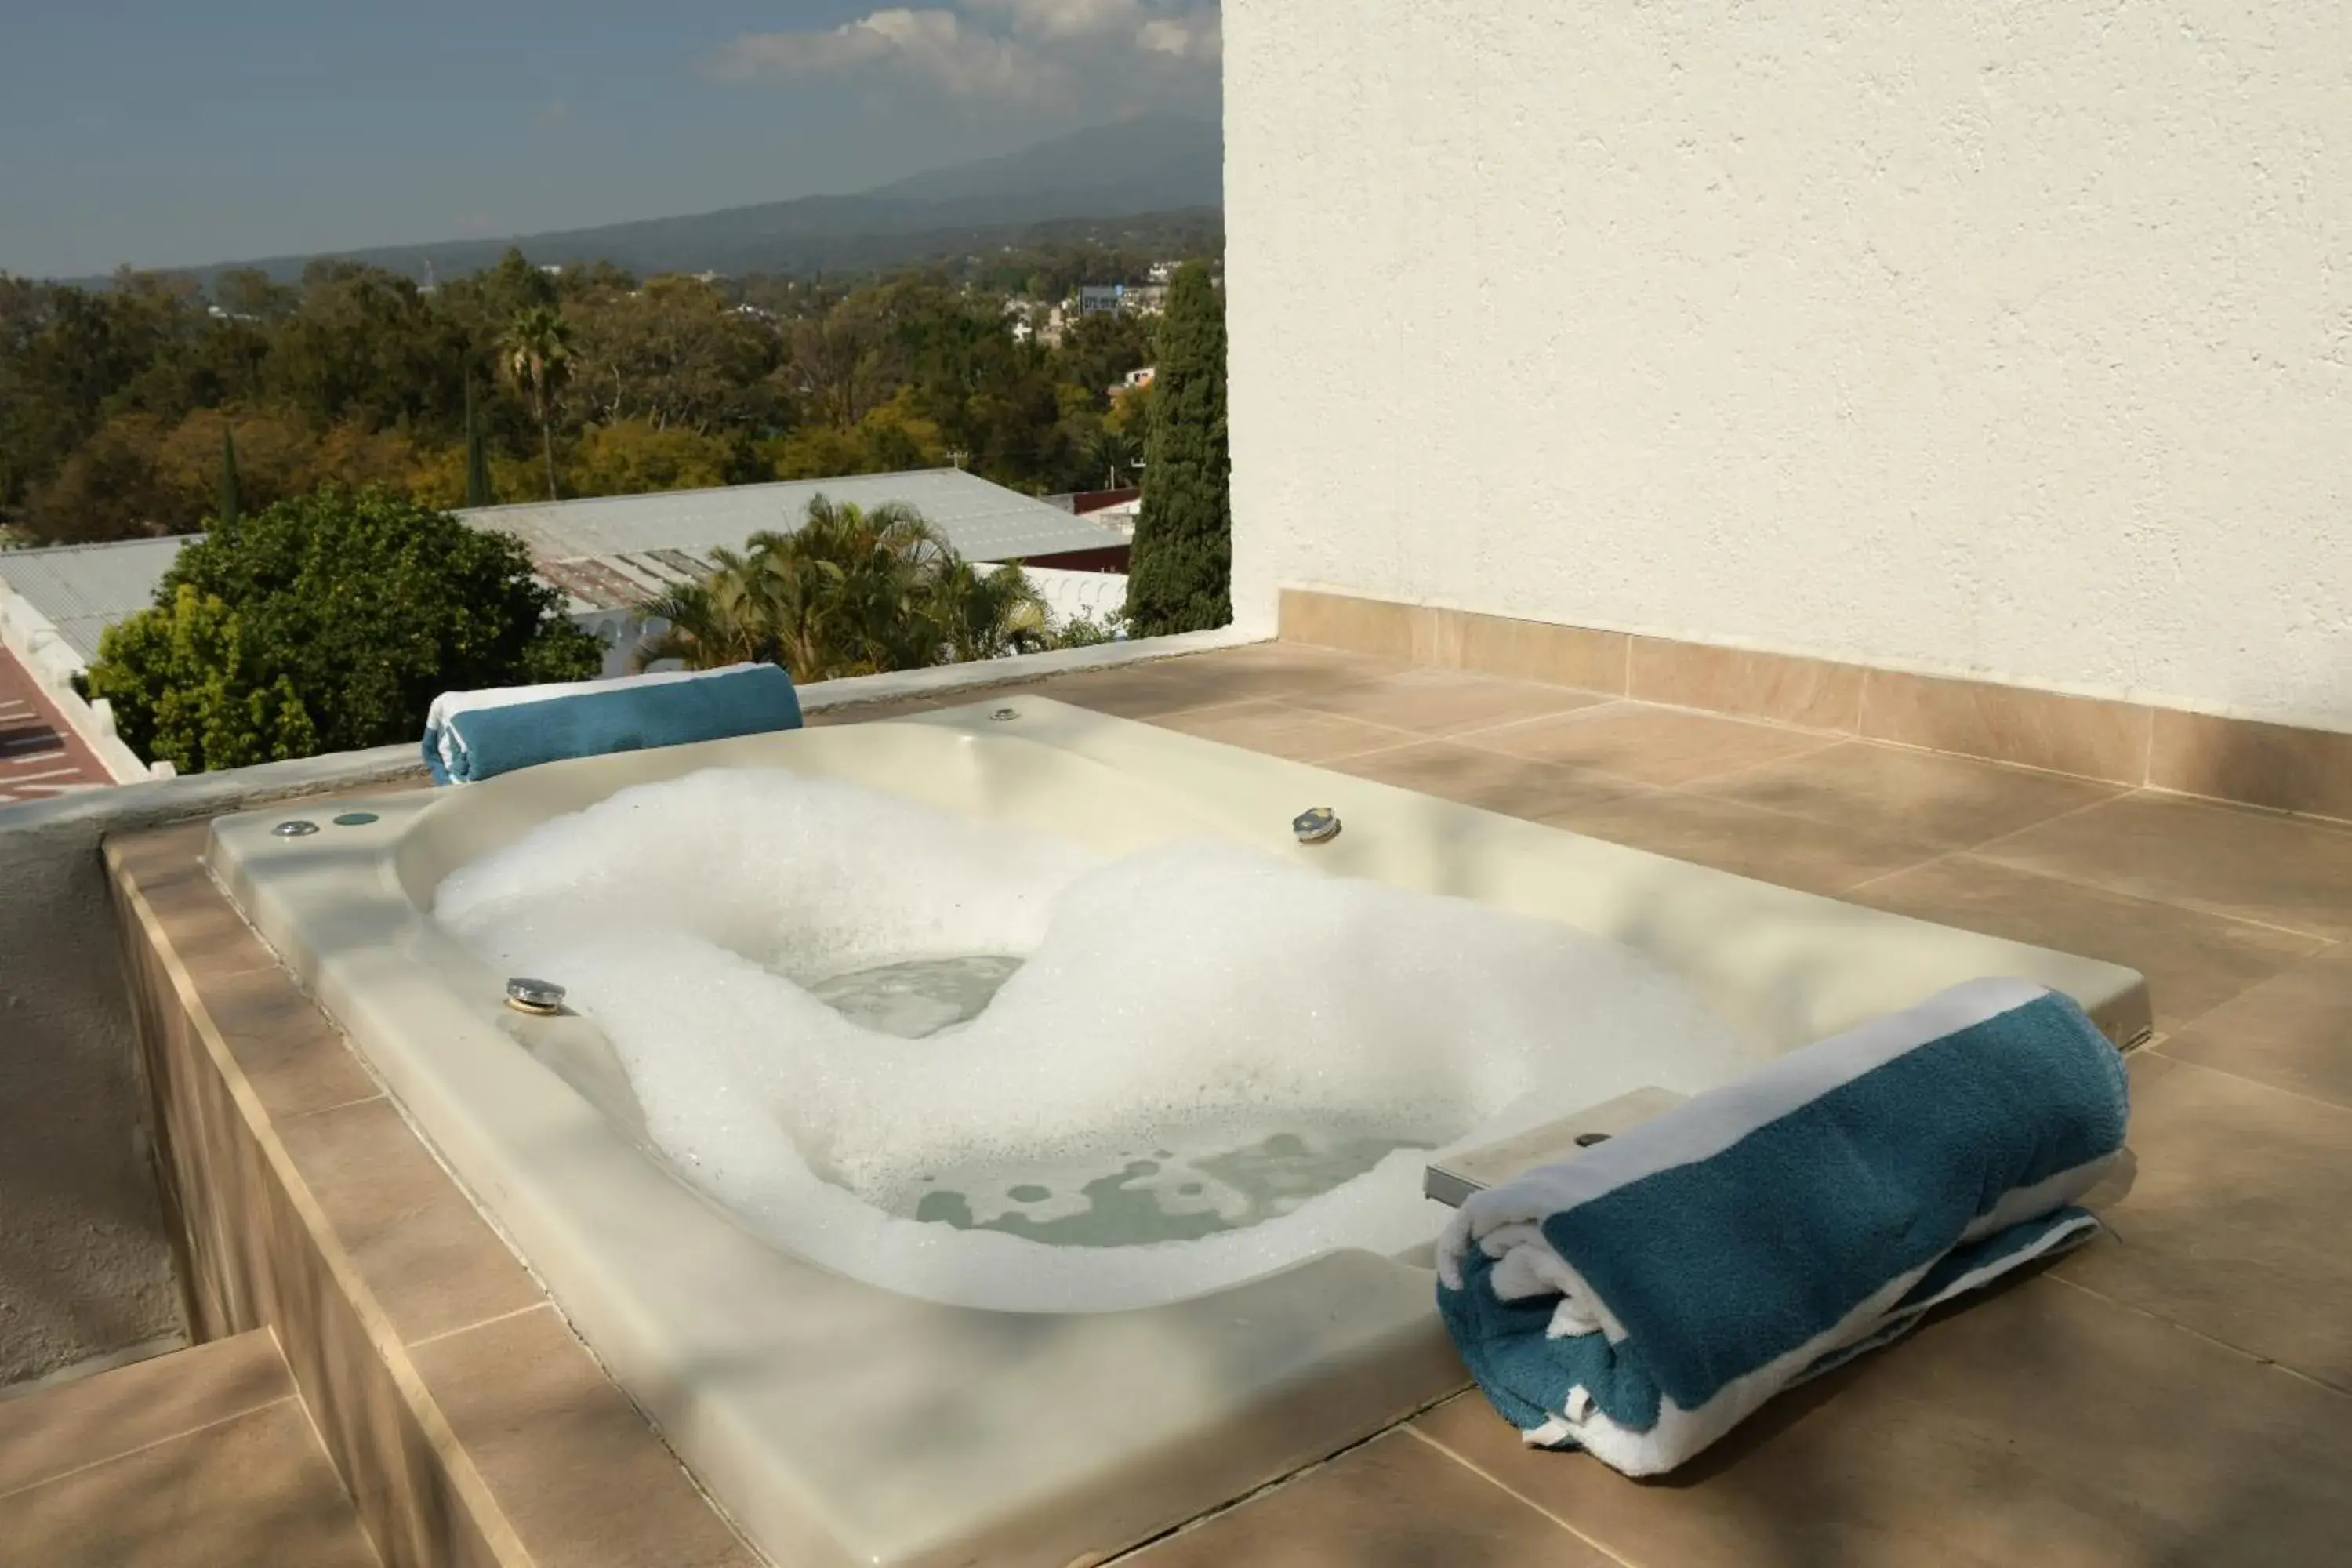 Hot Tub in Villa Bejar Cuernavaca